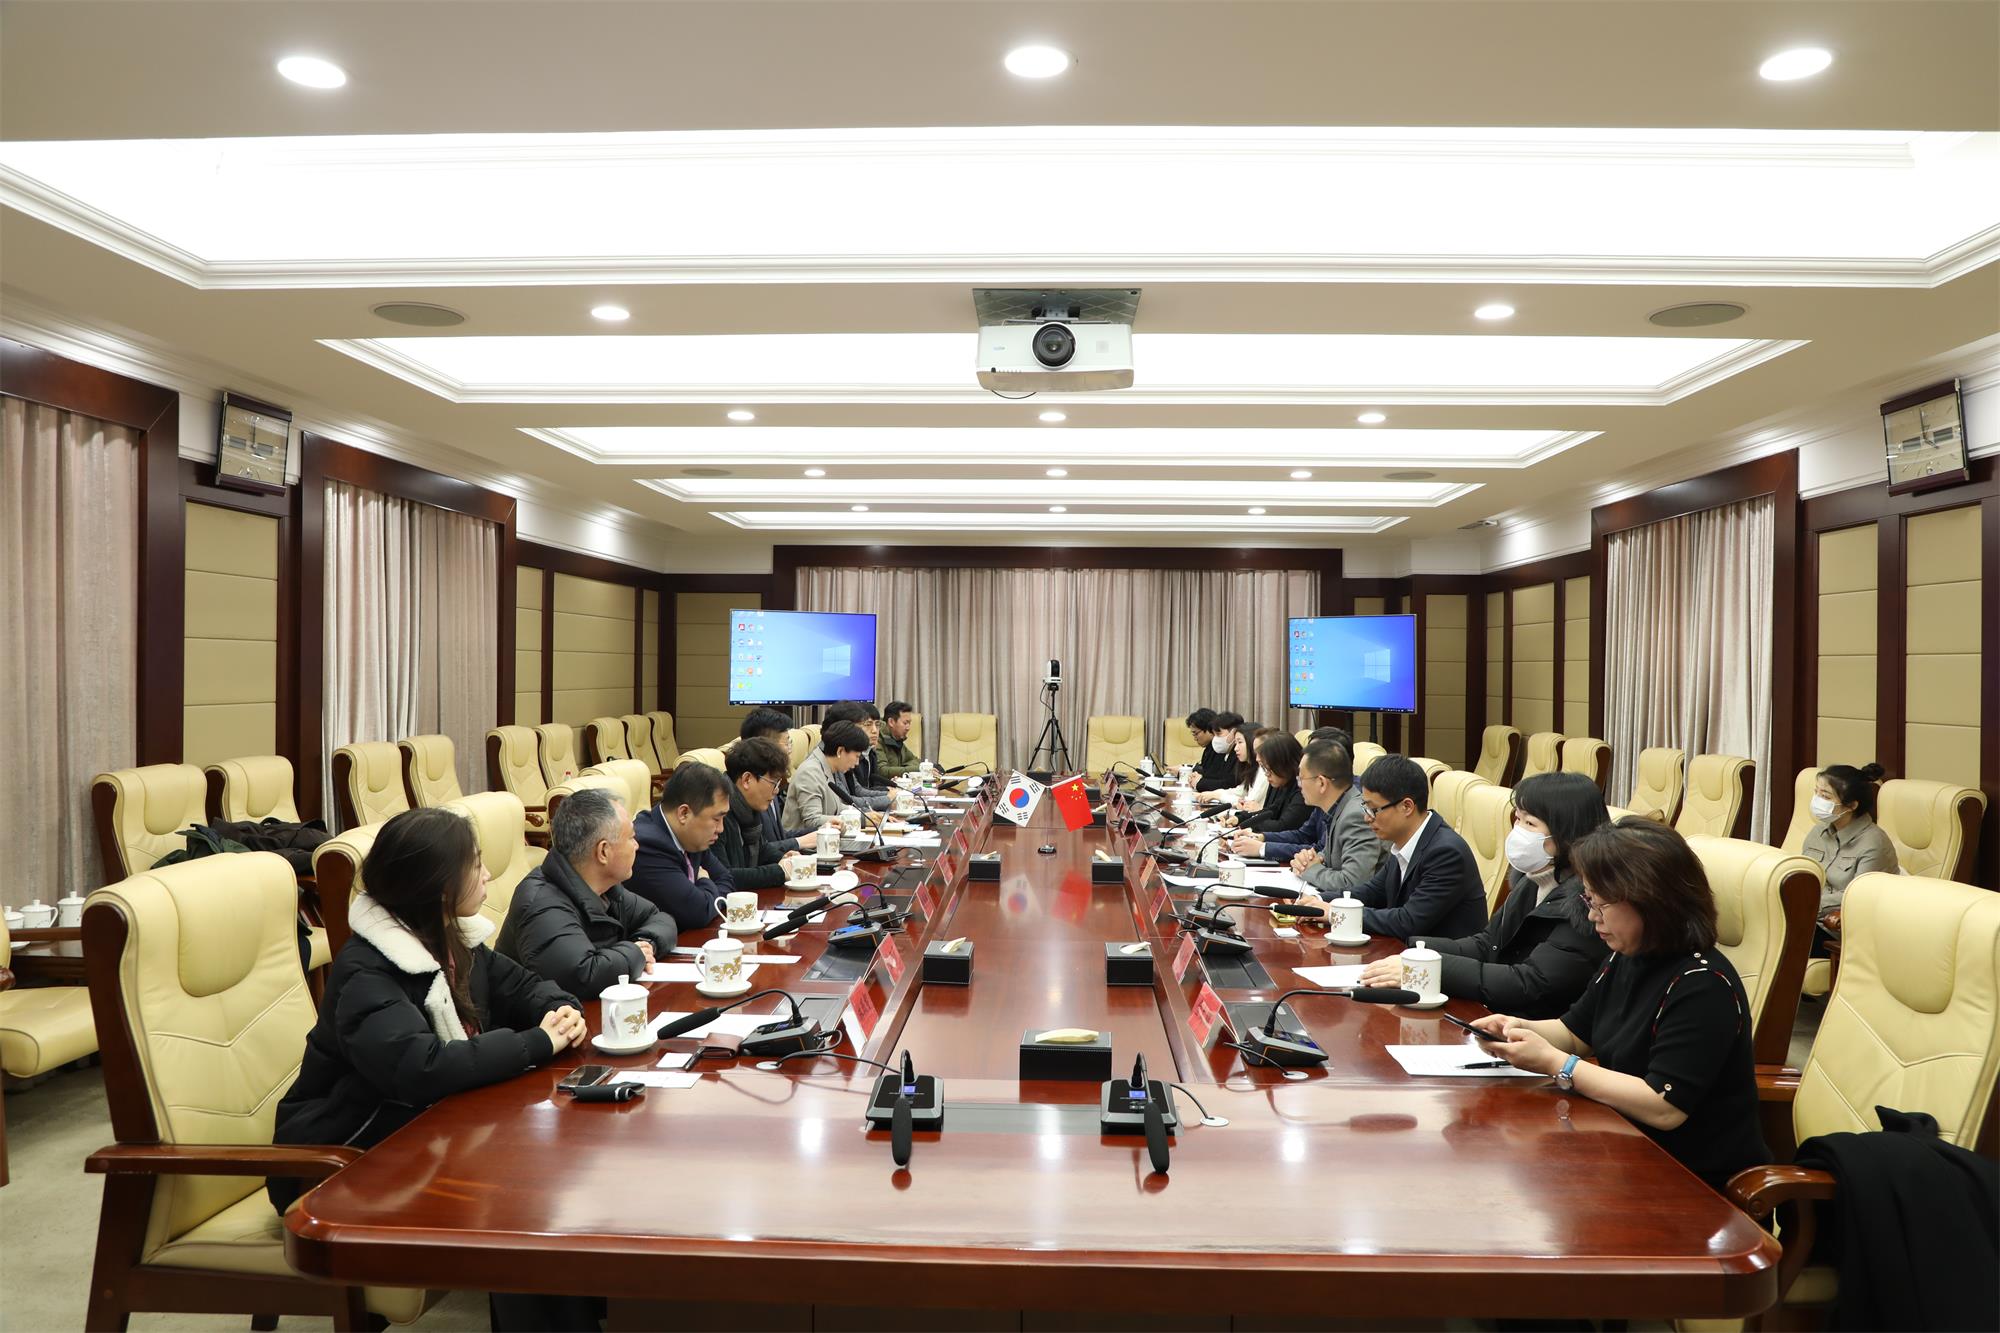 黑龍江與韓國中小企業投資合作考察團交流座談促合作